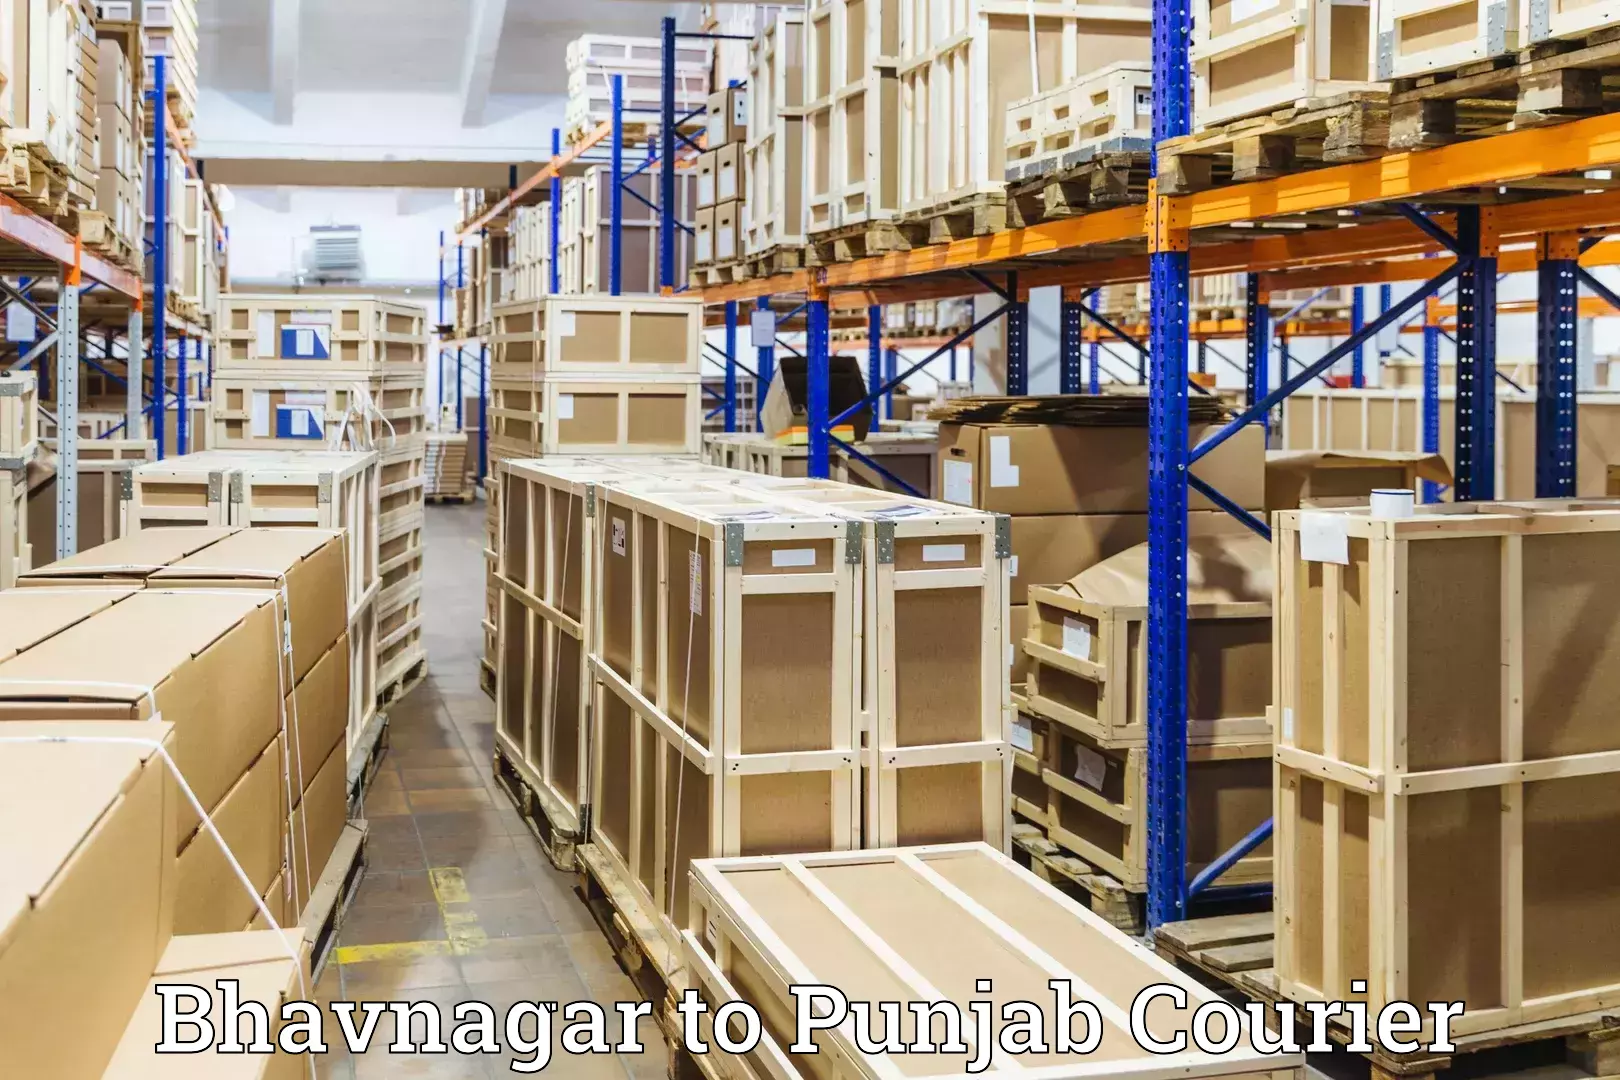 Doorstep luggage pickup Bhavnagar to Punjab